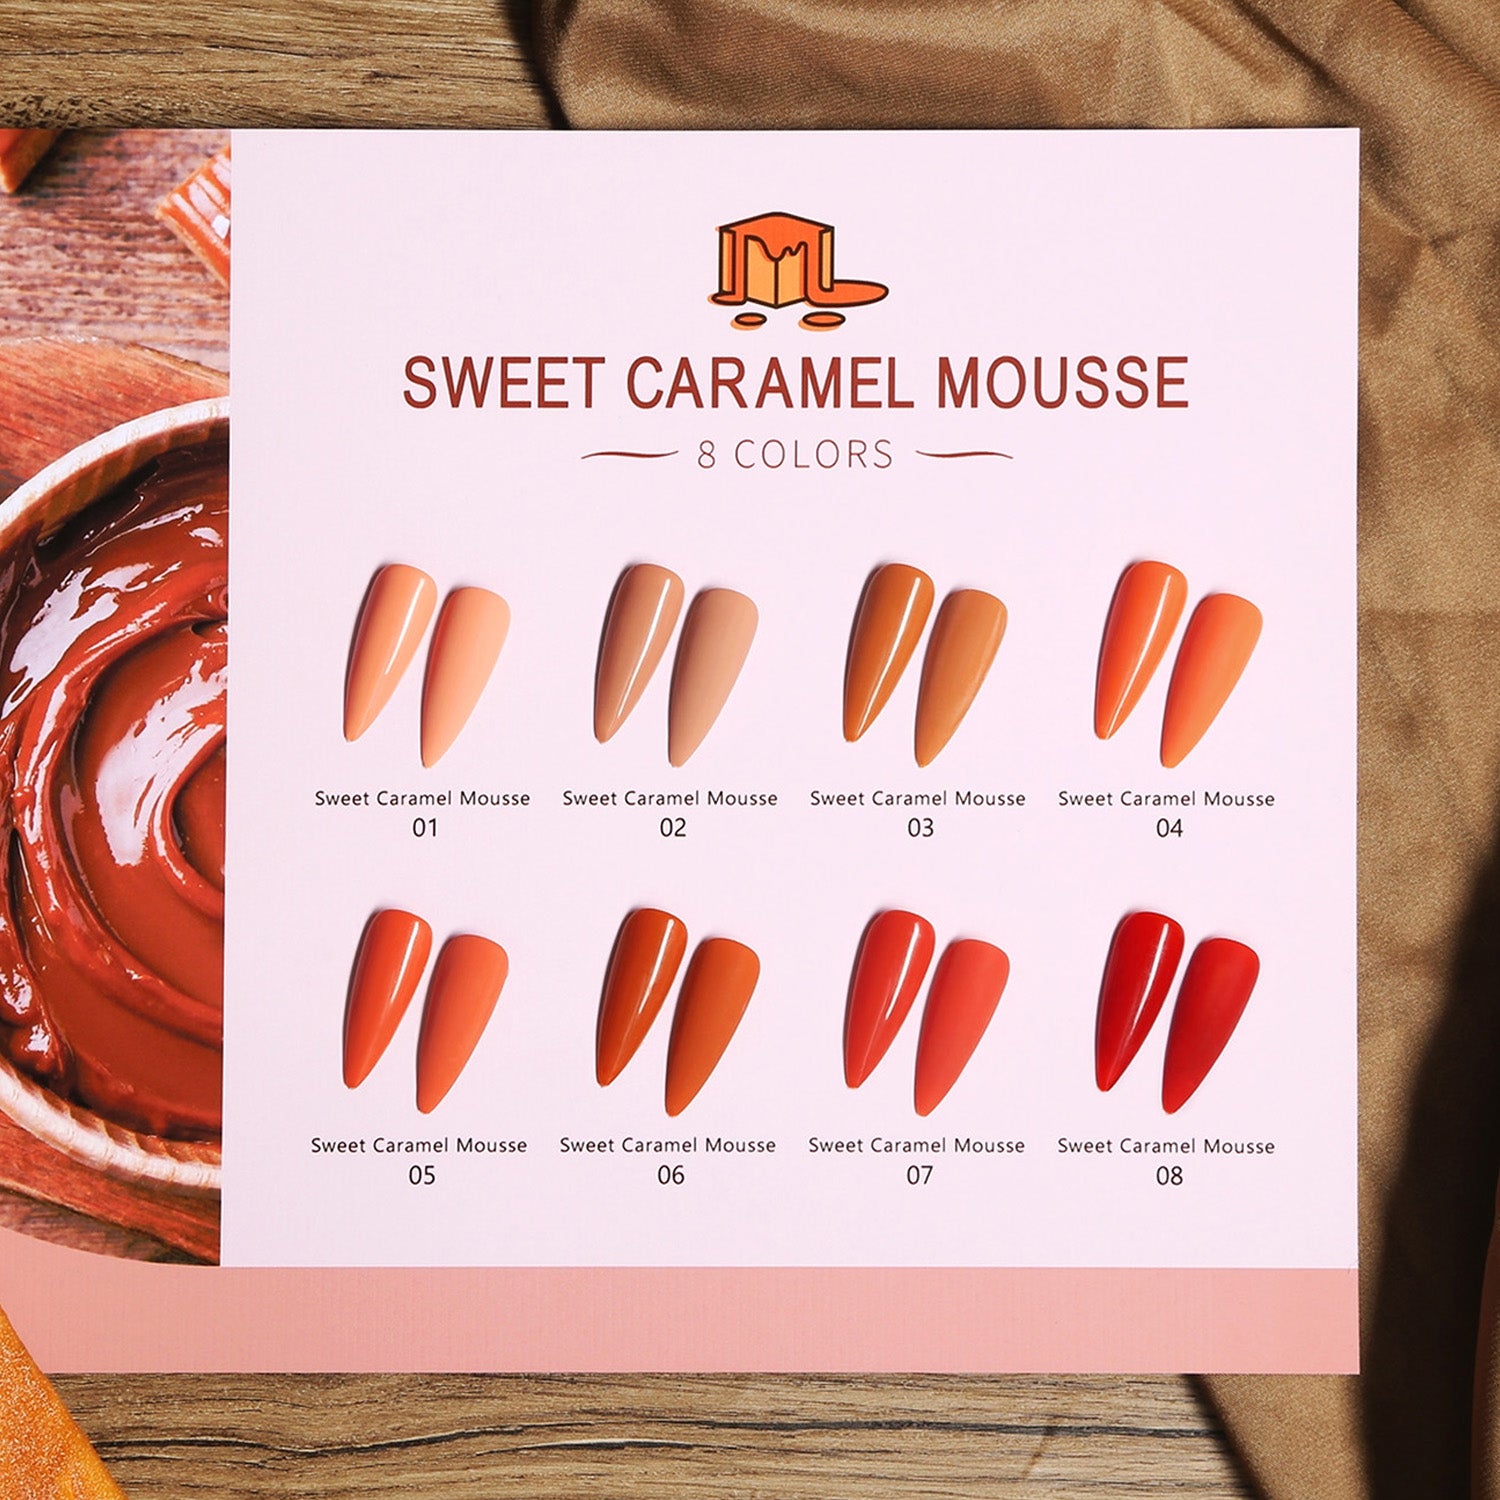 Sweet Caramel Mousse Series